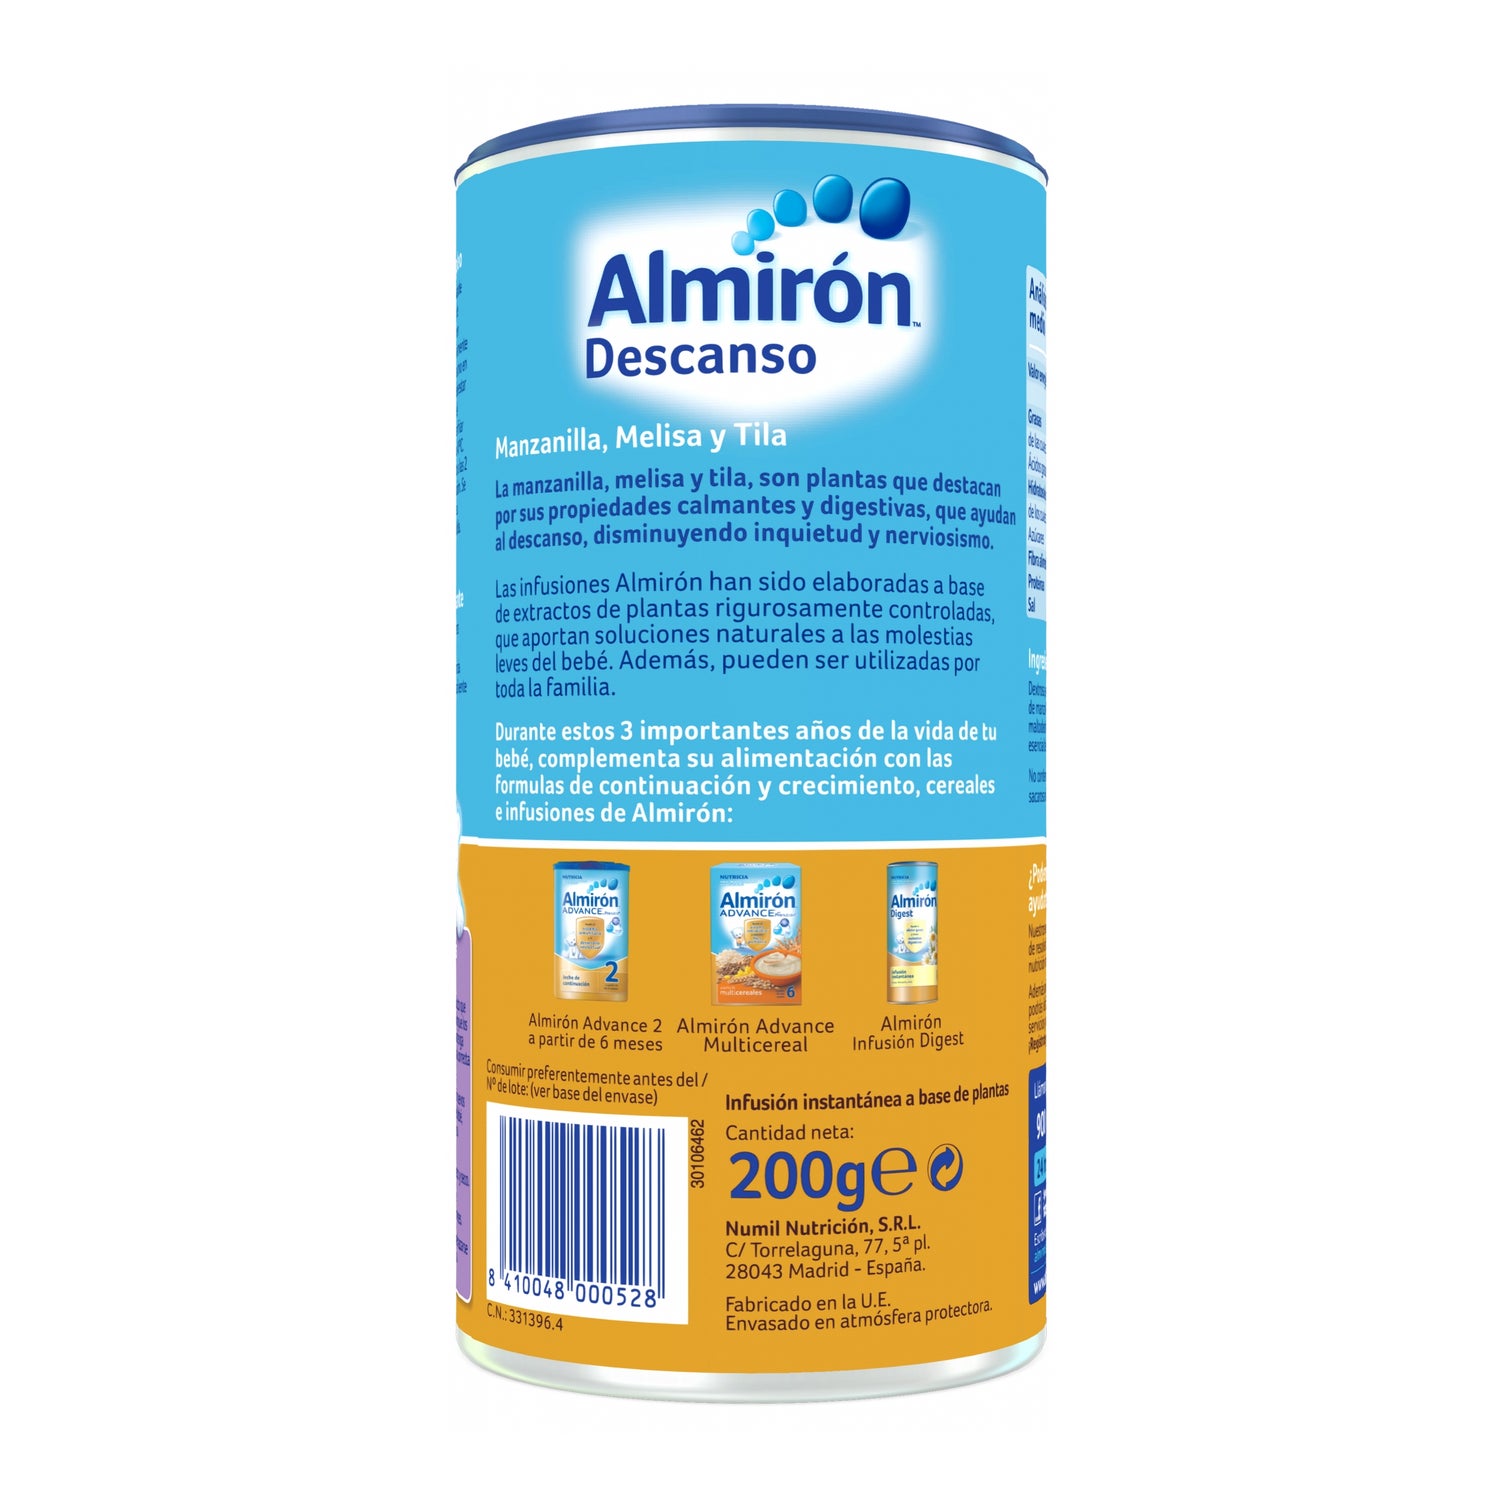 Almiron Advance 1 Digest 800 Gr